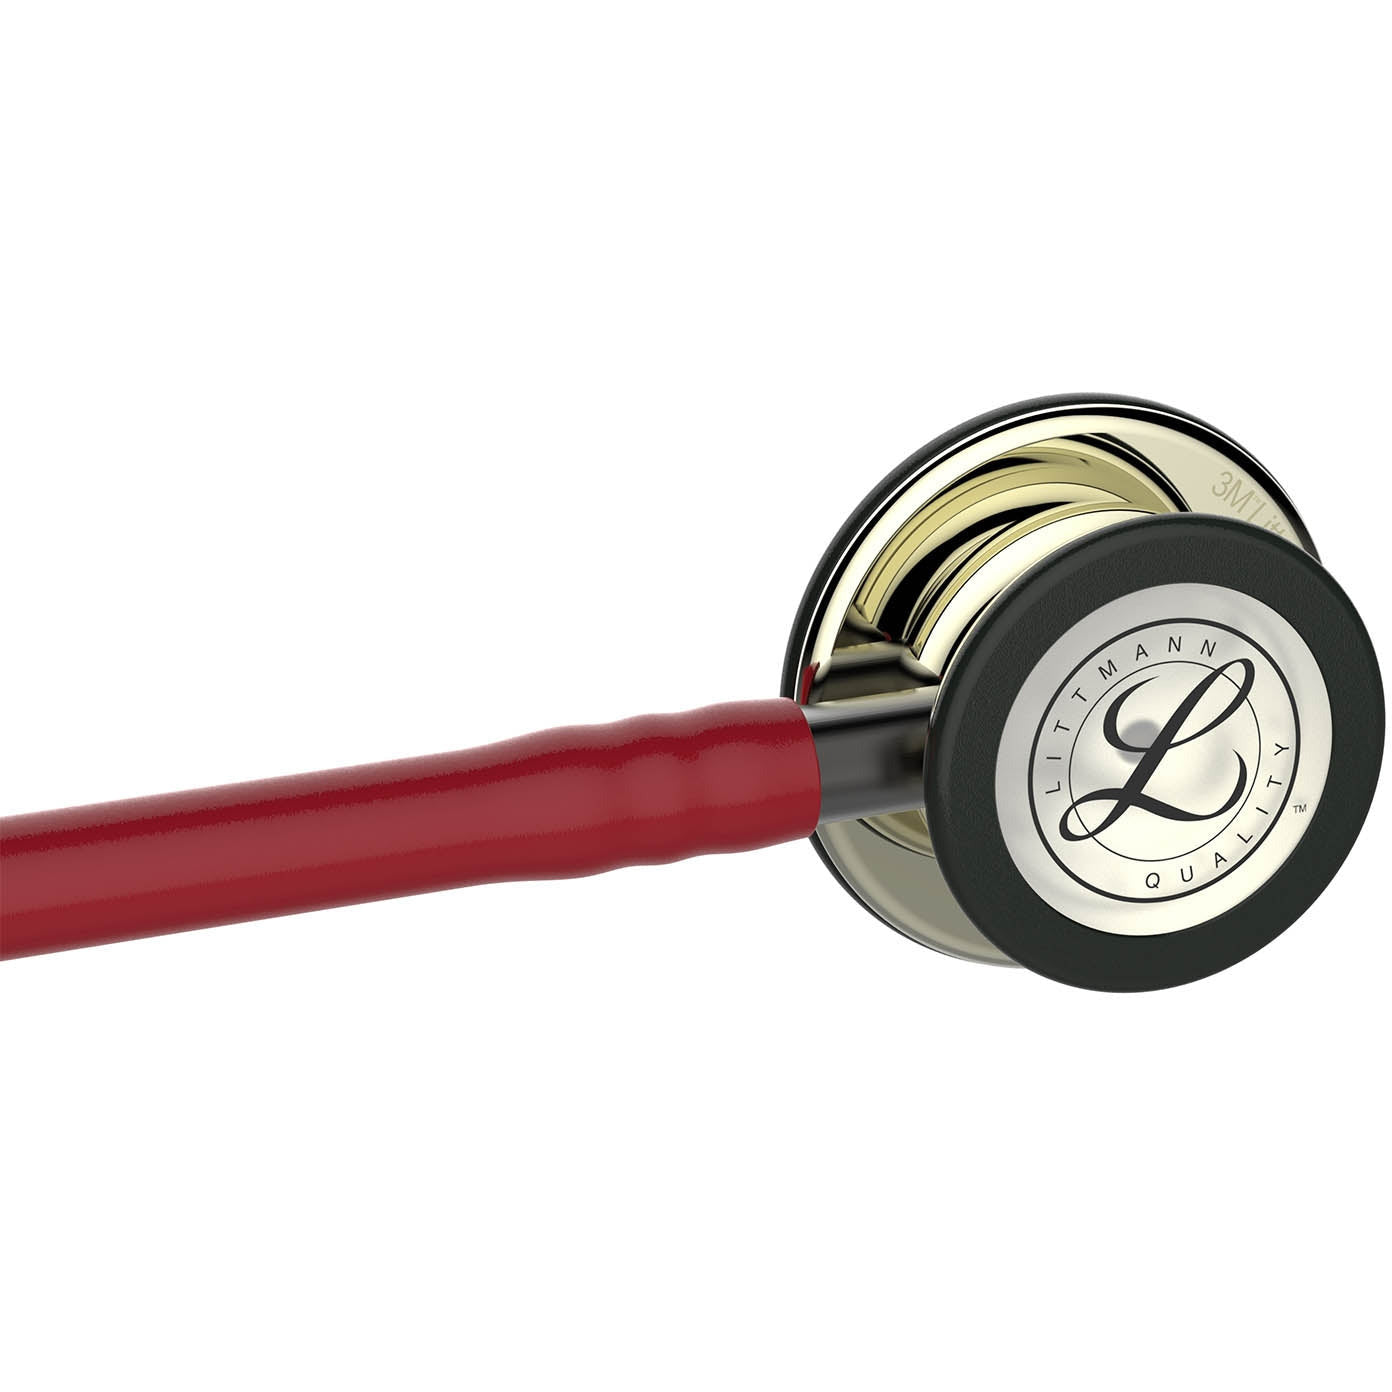 Stetoskop 3M™ Littmann® Classic III™ Monitoring, zaključna obdelava membranskega nastavka v barvi šampanjca, bordo rdeča cev, slušalke in osnova v temni barvi, 68,5 cm, 5864